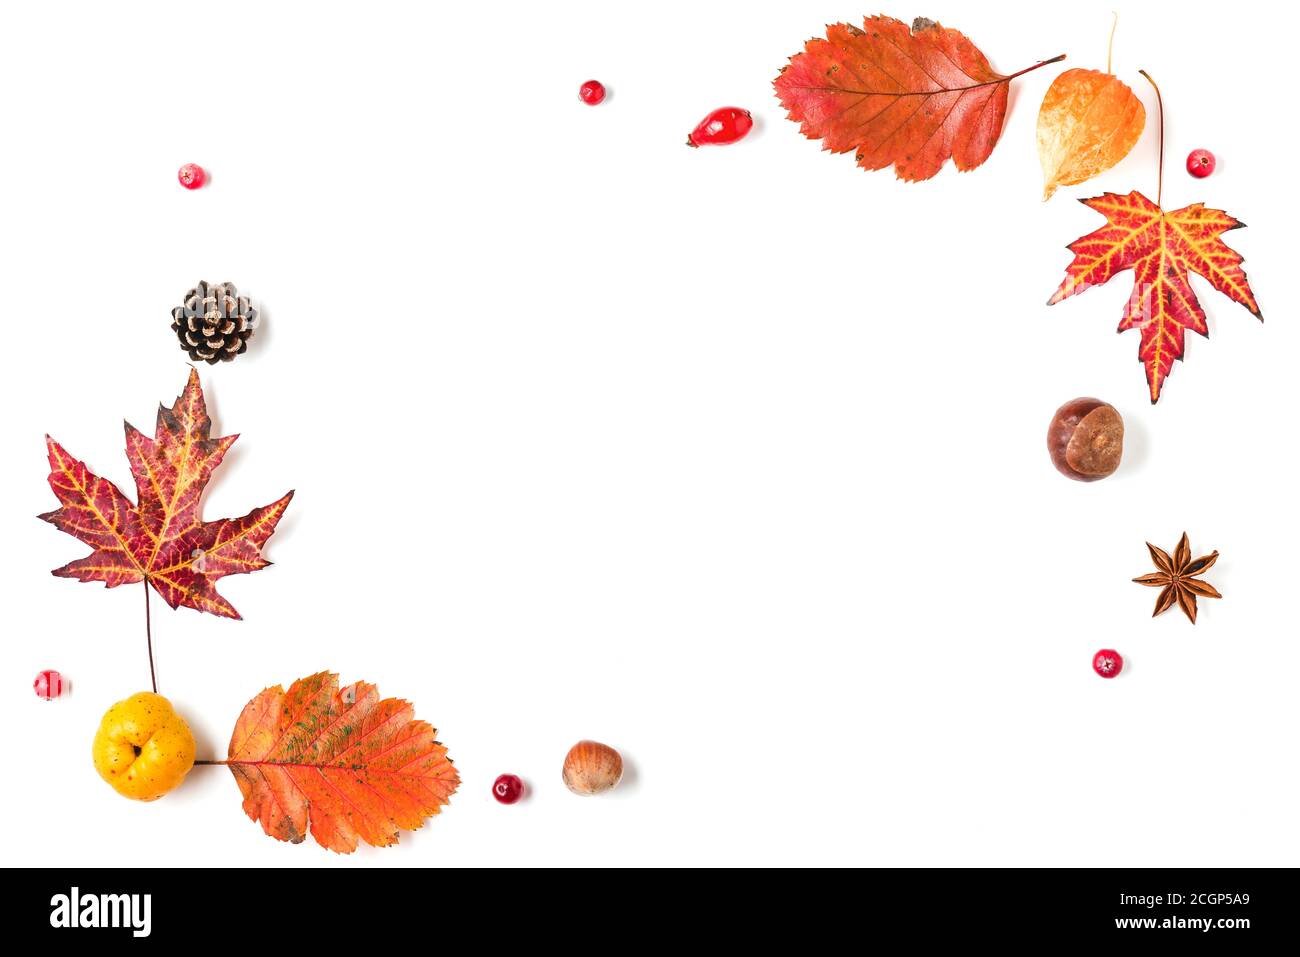 Herbsthintergrund. Getrocknete Blätter, Blumen, Beeren, Nüsse, Zapfen isoliert auf weißem Hintergrund. Herbst, Herbst, Thanksgiving Day Konzept. Flach liegend, top vie Stockfoto